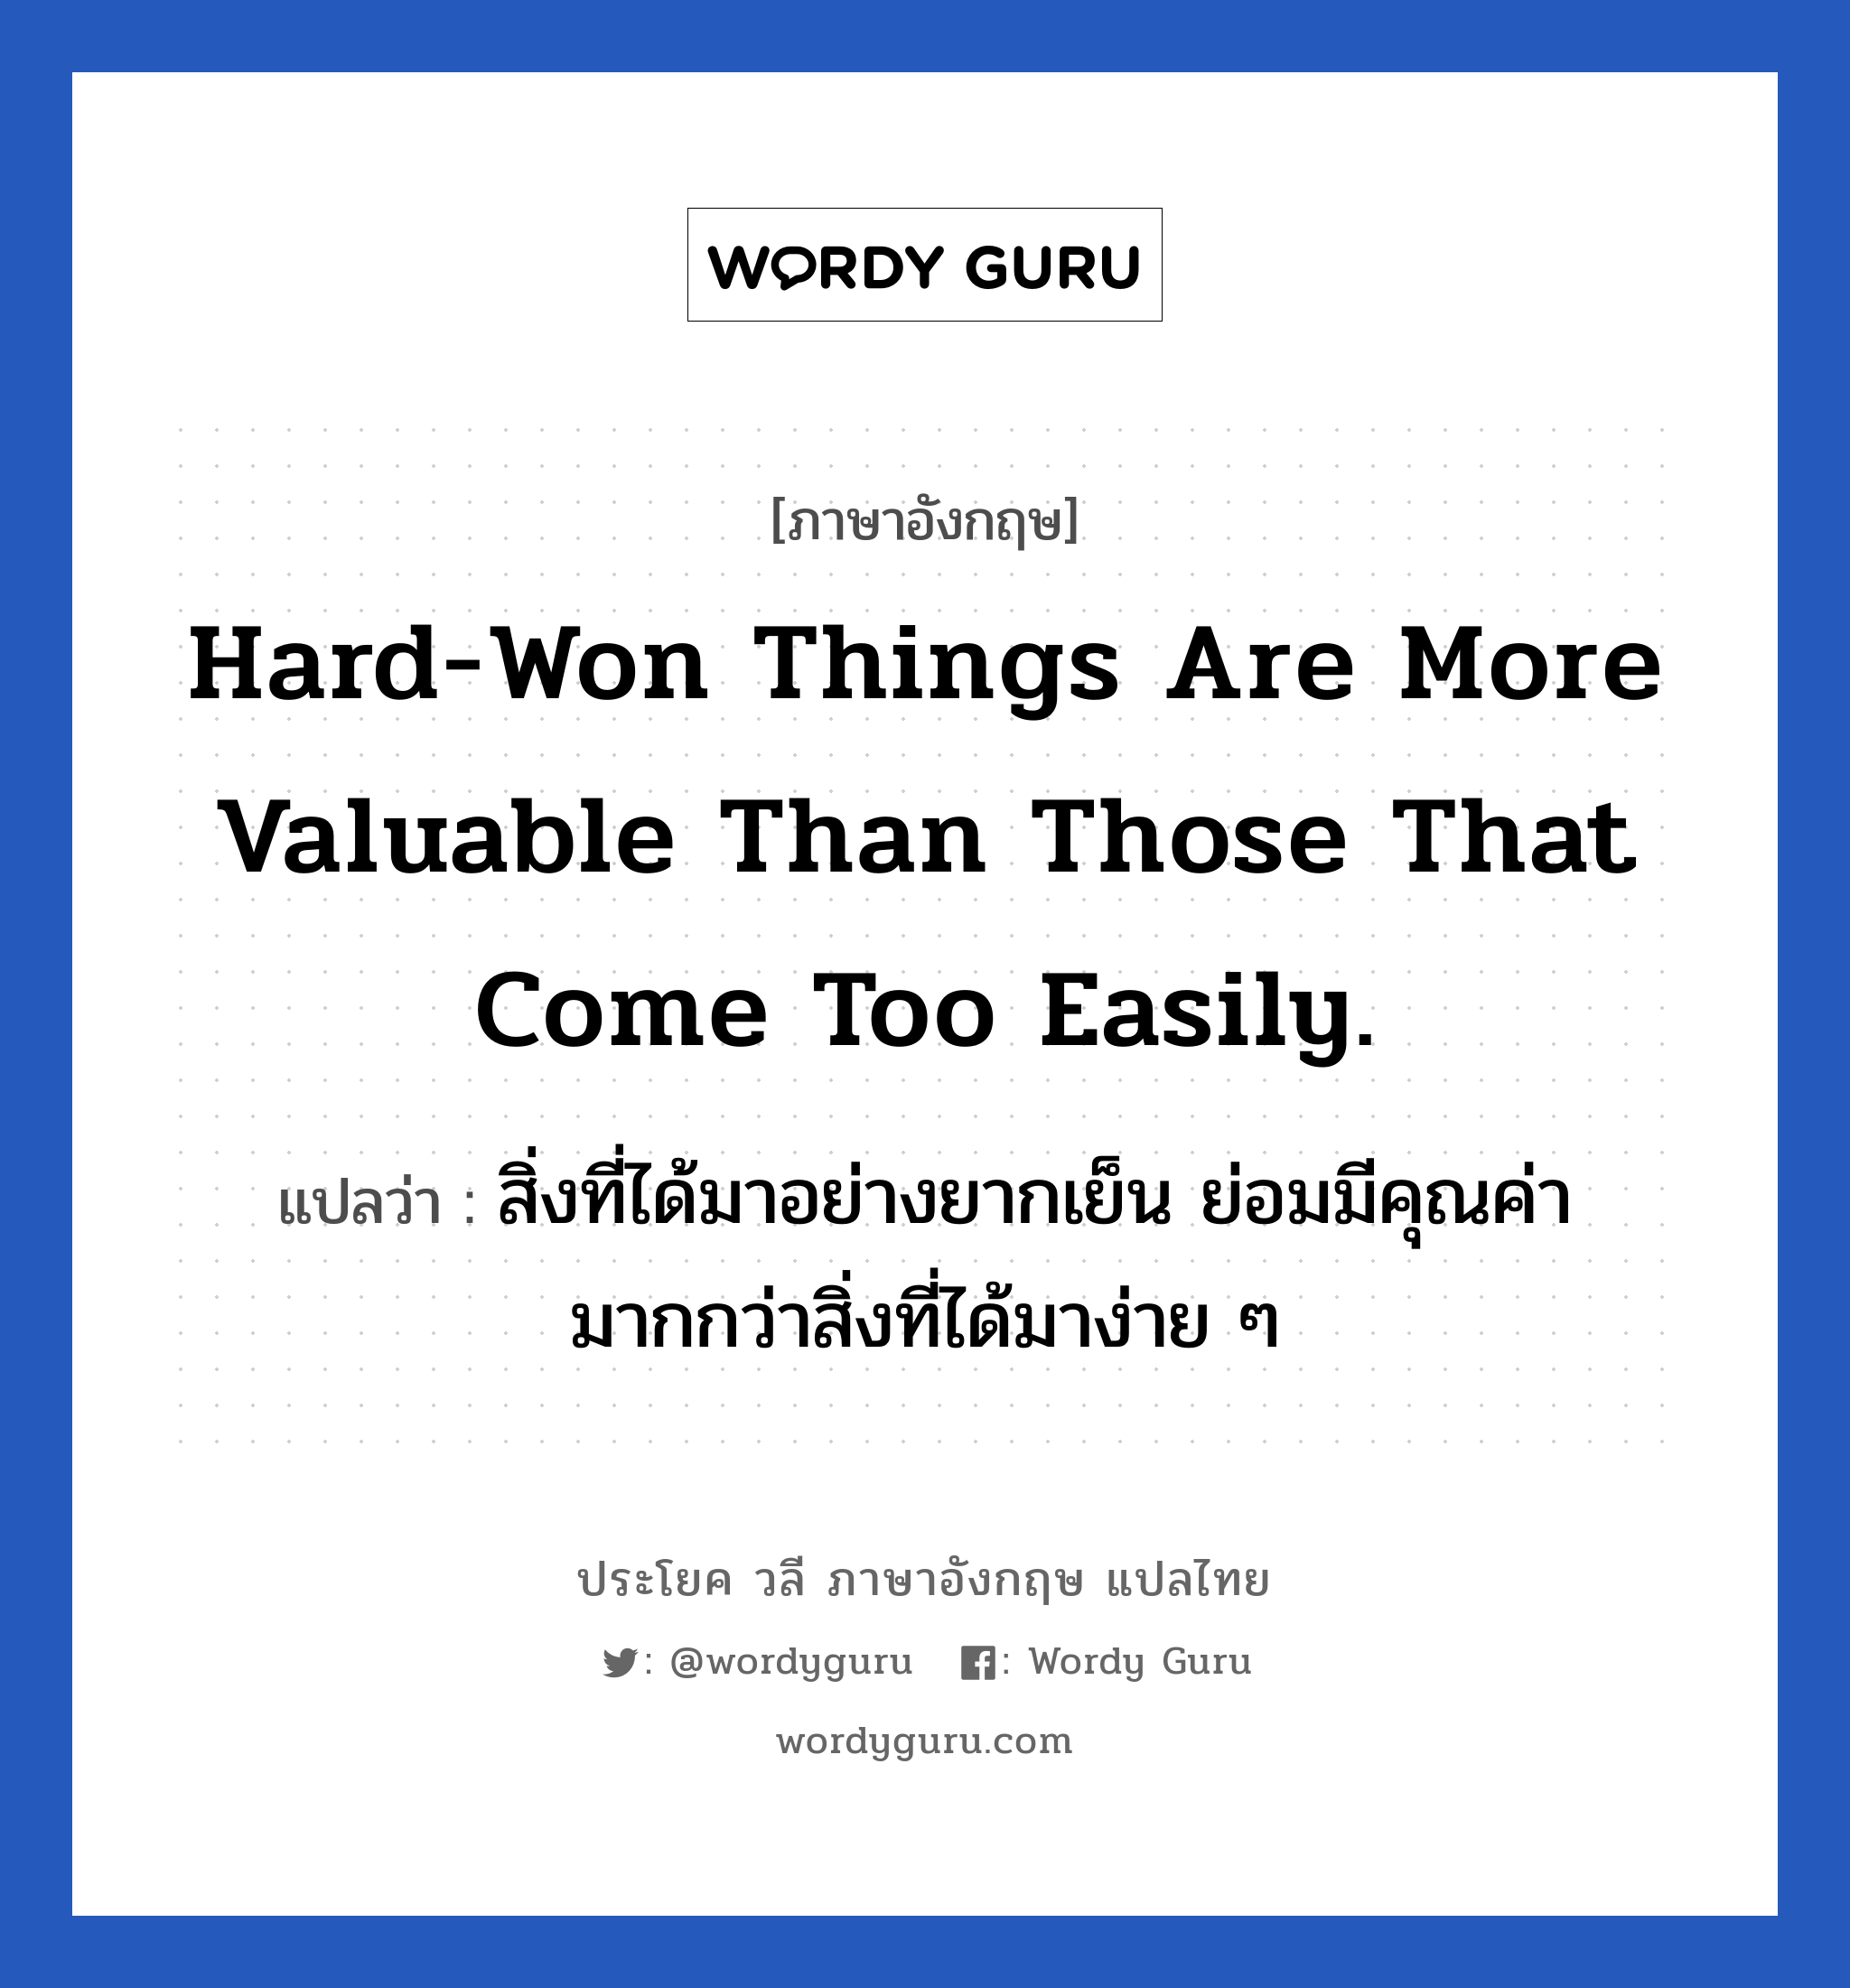 สิ่งที่ได้มาอย่างยากเย็น ย่อมมีคุณค่ามากกว่าสิ่งที่ได้มาง่าย ๆ ภาษาอังกฤษ?, วลีภาษาอังกฤษ สิ่งที่ได้มาอย่างยากเย็น ย่อมมีคุณค่ามากกว่าสิ่งที่ได้มาง่าย ๆ แปลว่า Hard-won things are more valuable than those that come too easily. หมวด ในที่ทำงาน